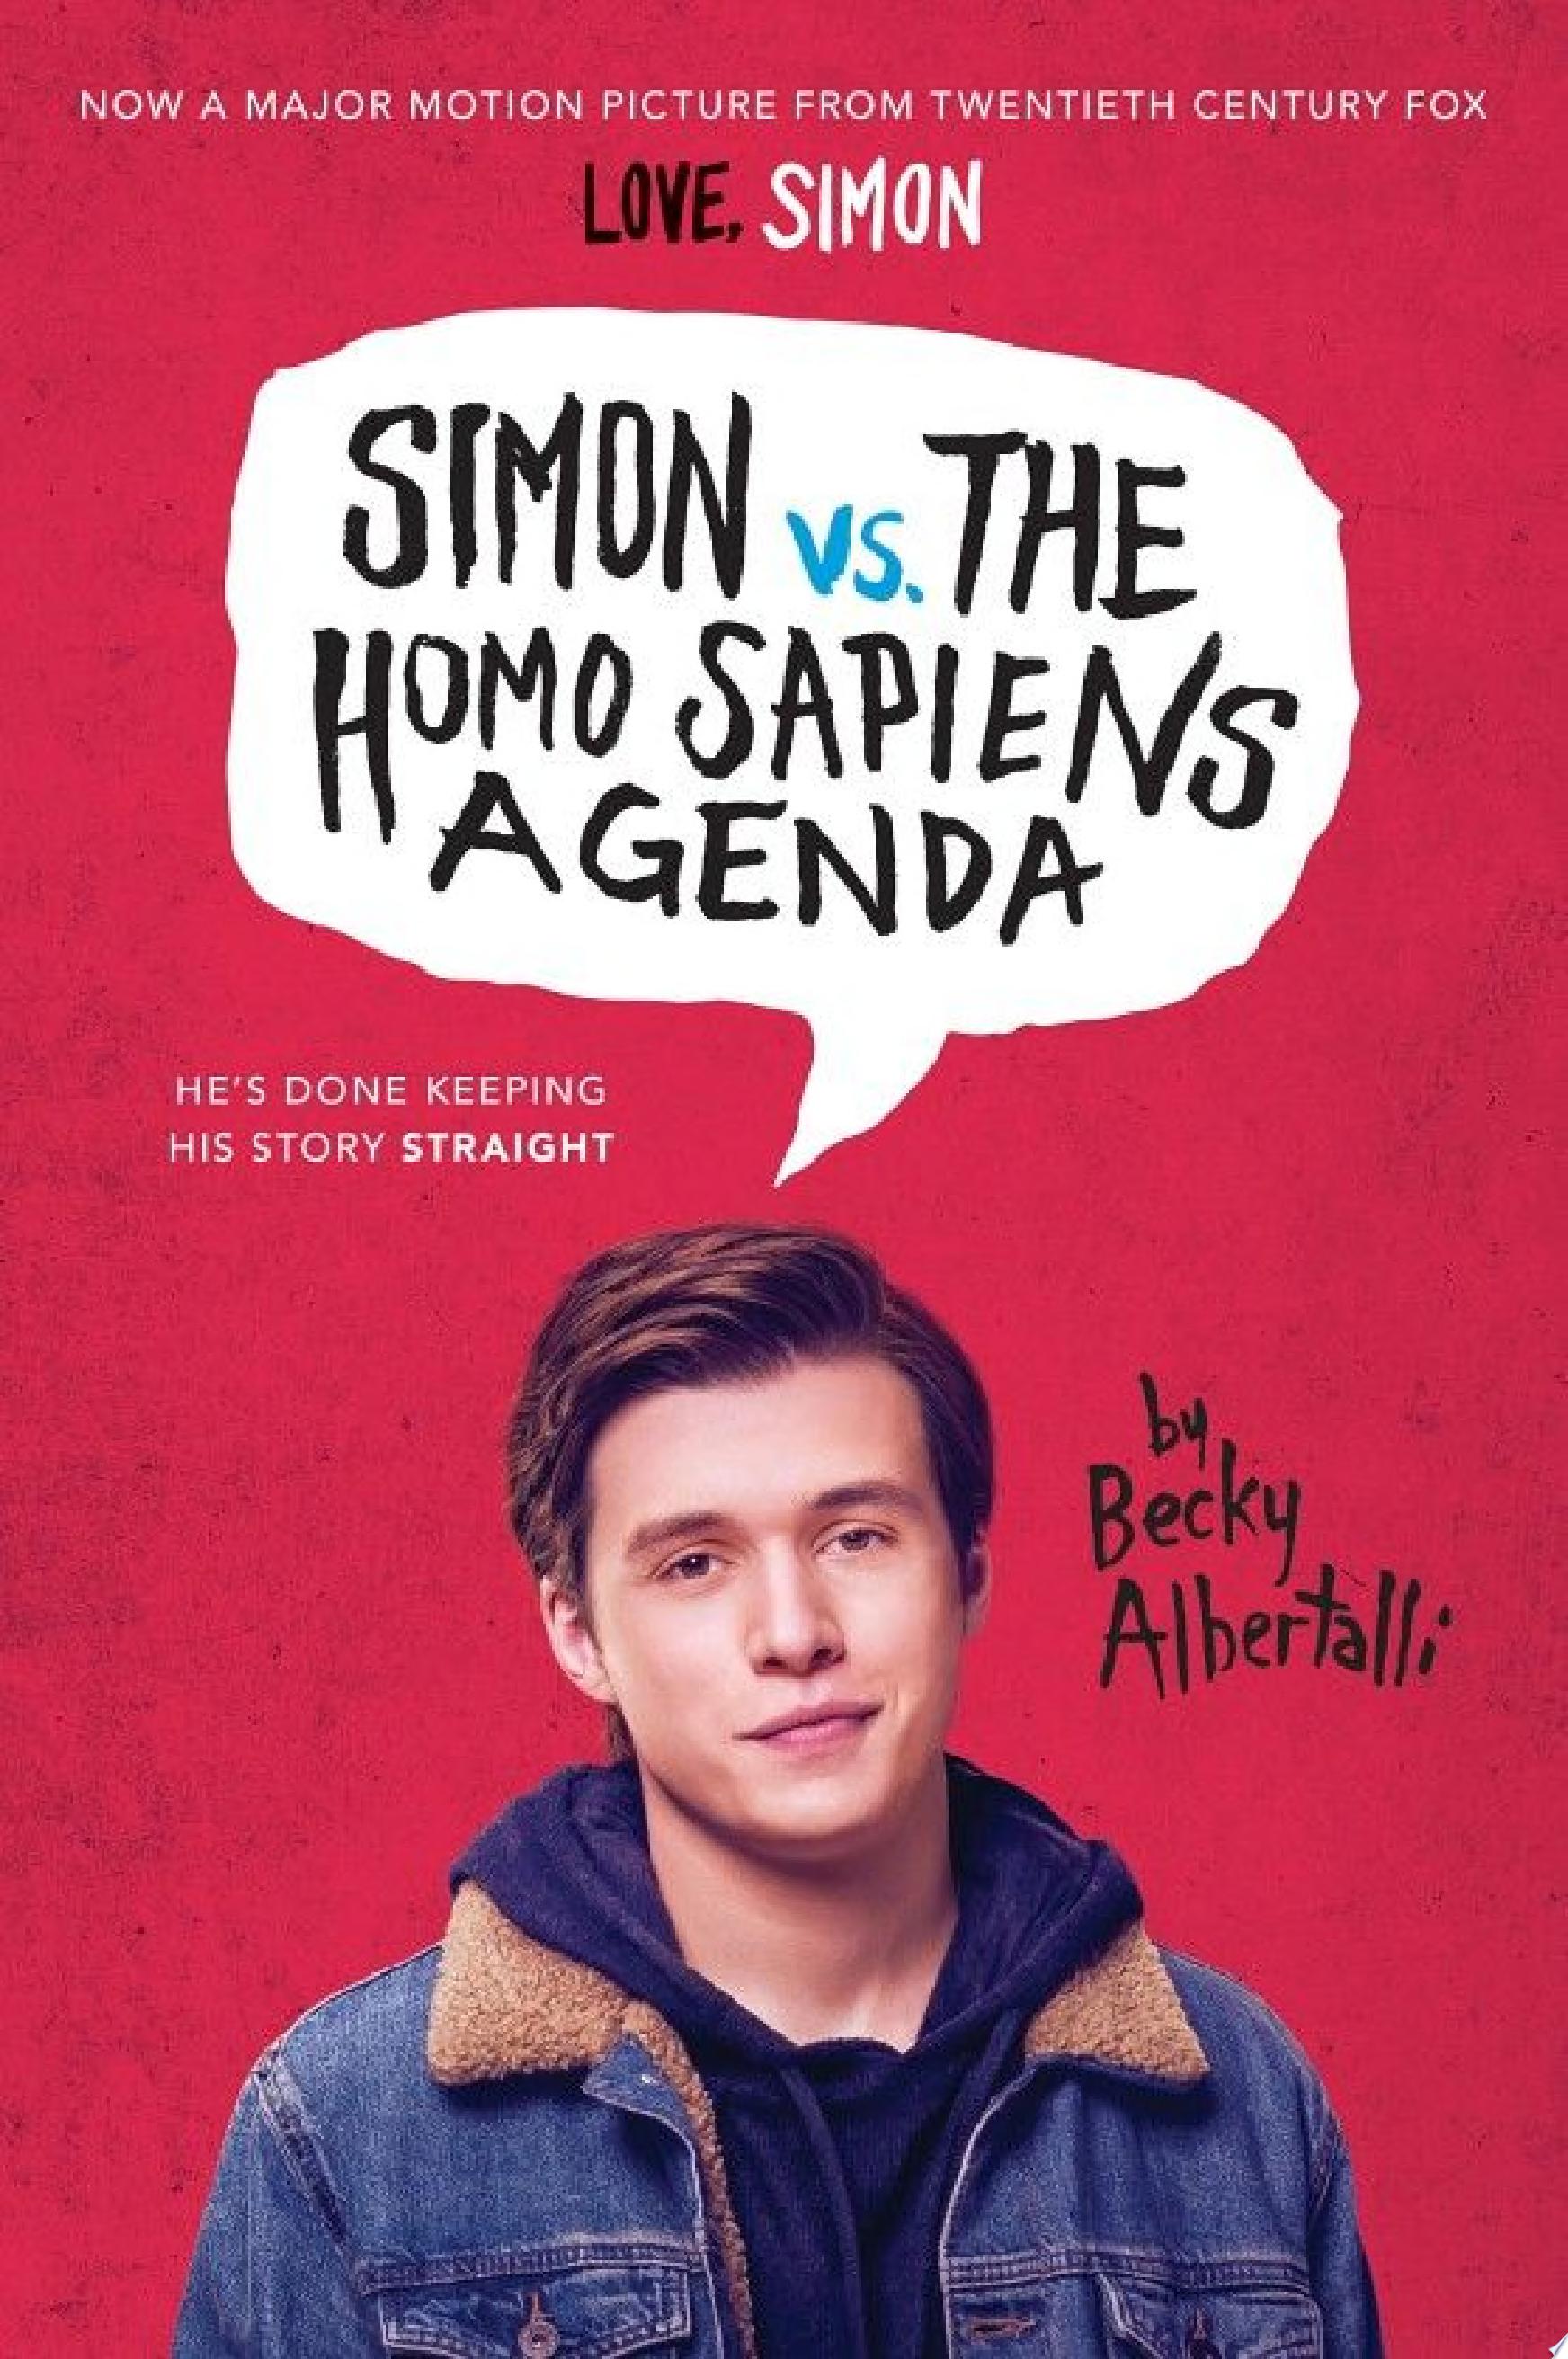 Image for "Simon vs. the Homo Sapiens Agenda"